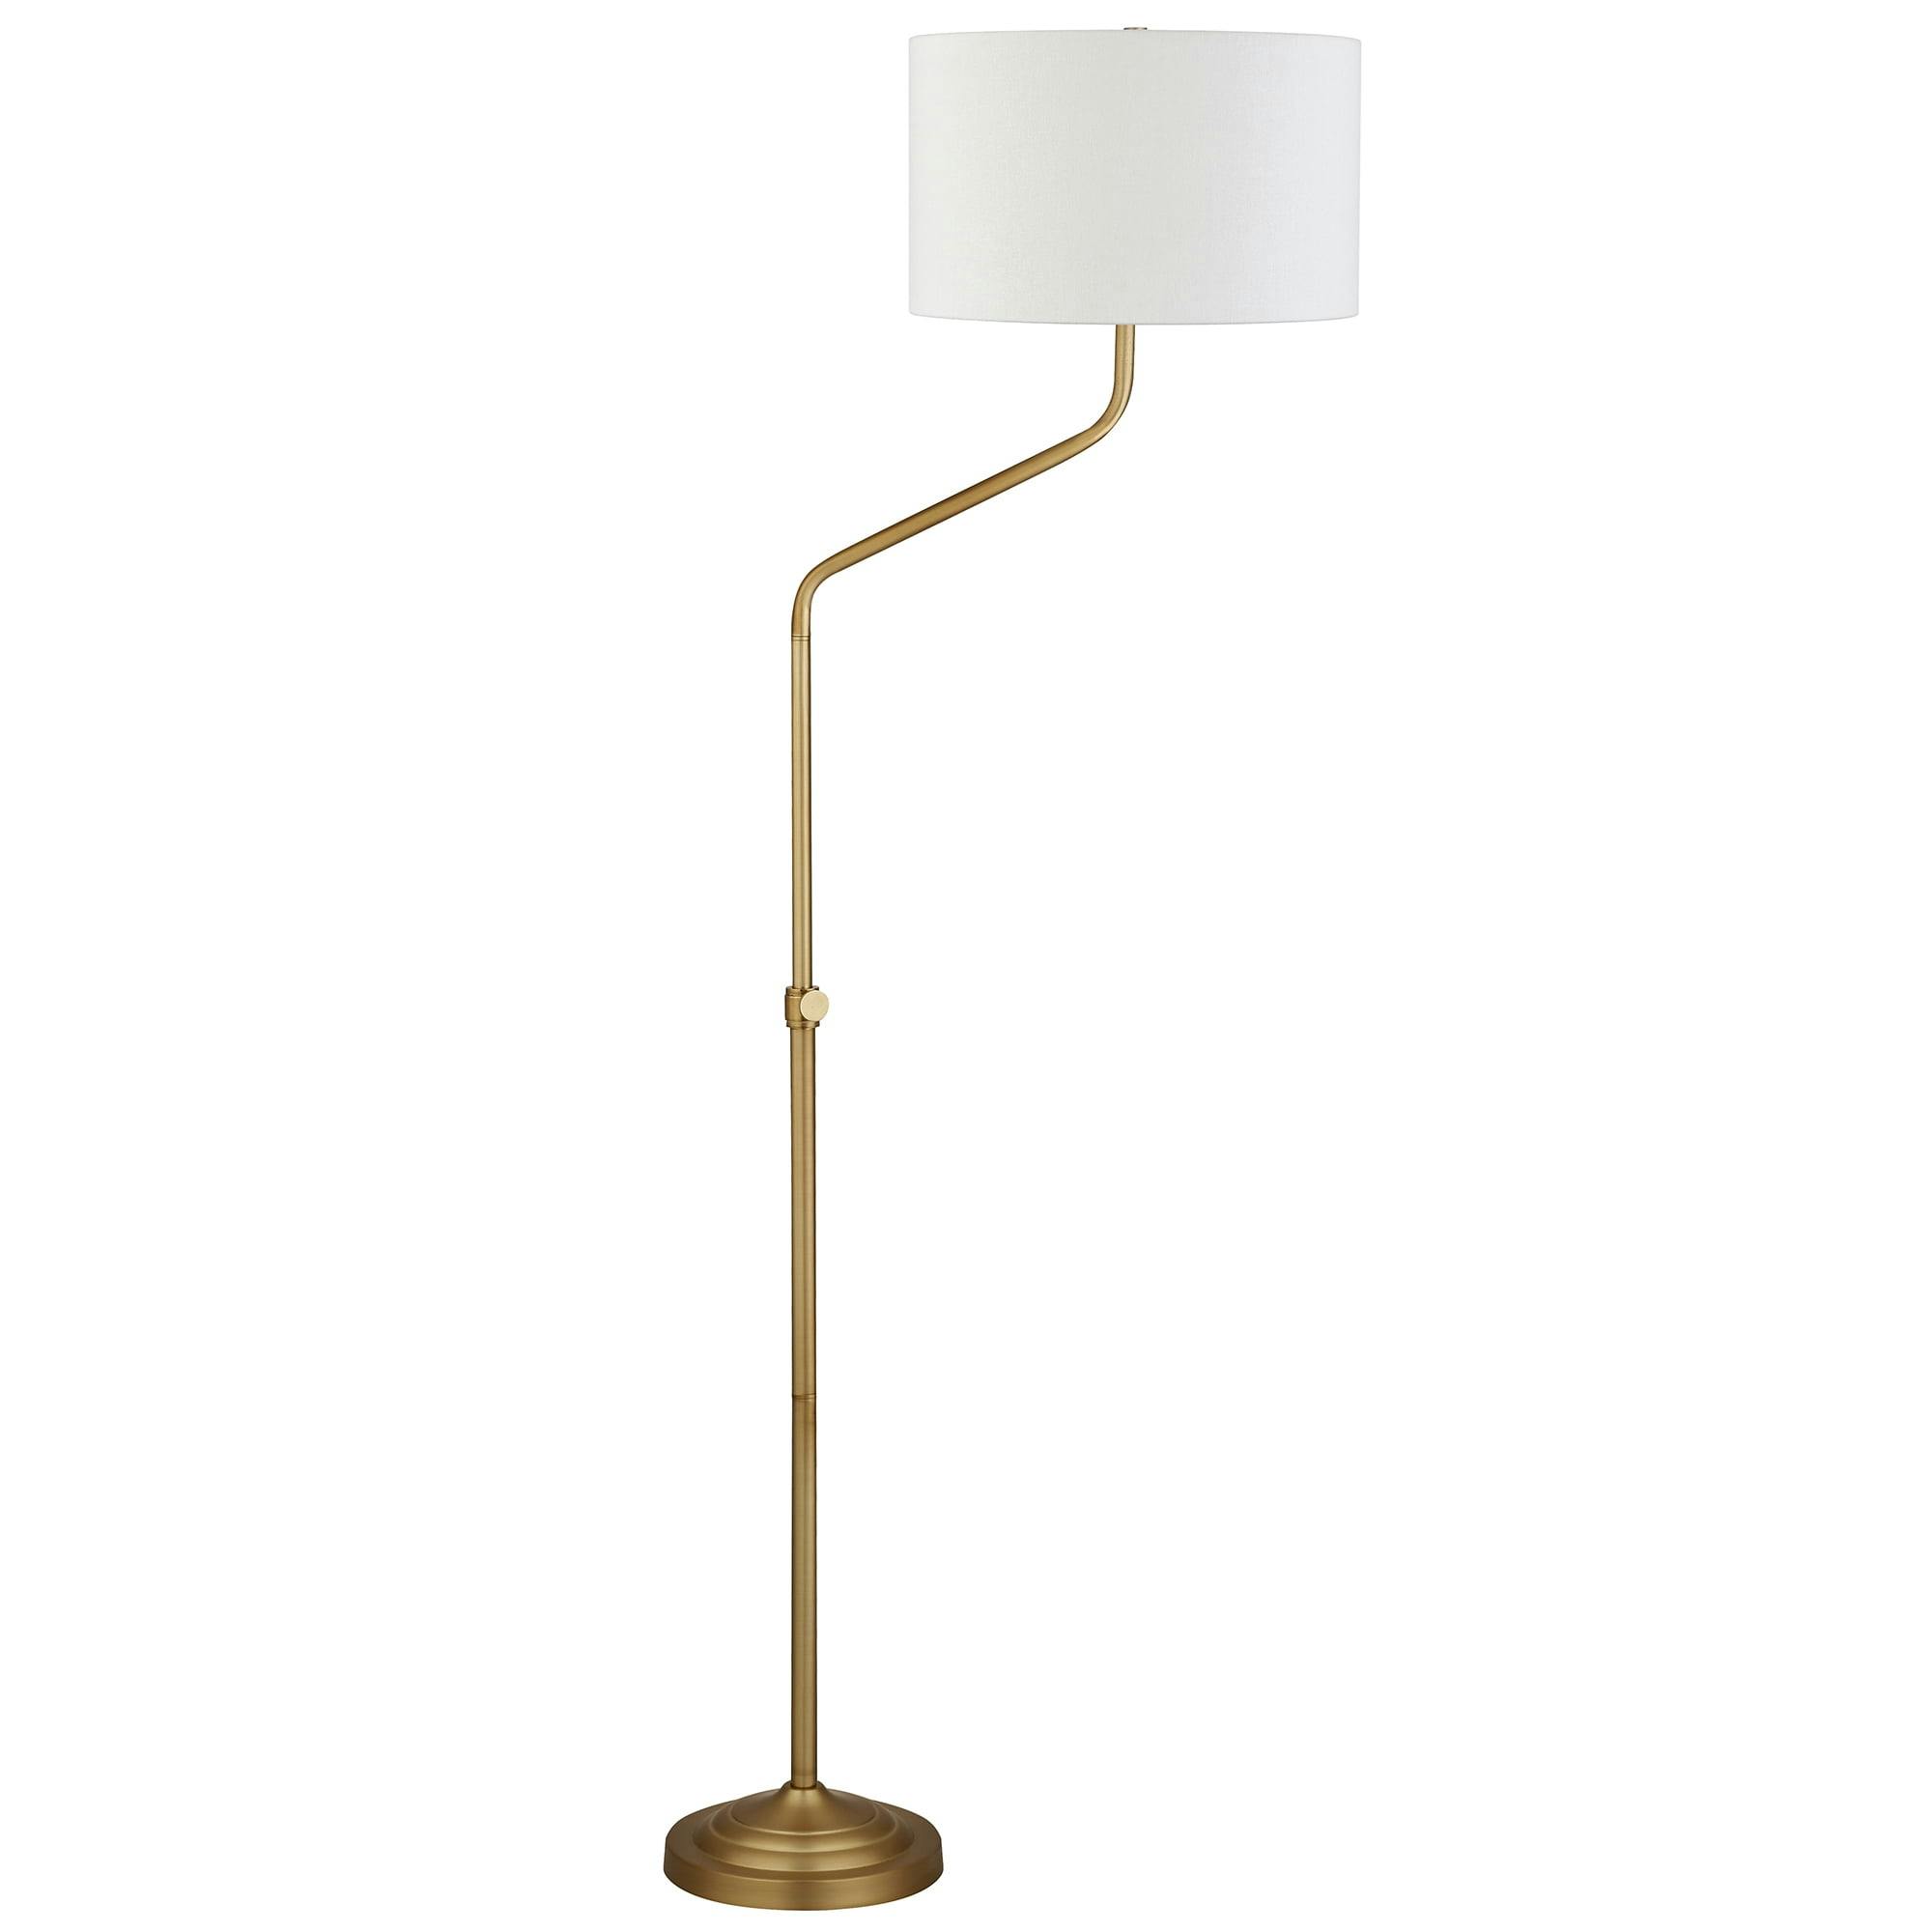 Callum Adjustable Height 66" Smart Floor Lamp in Brushed Brass